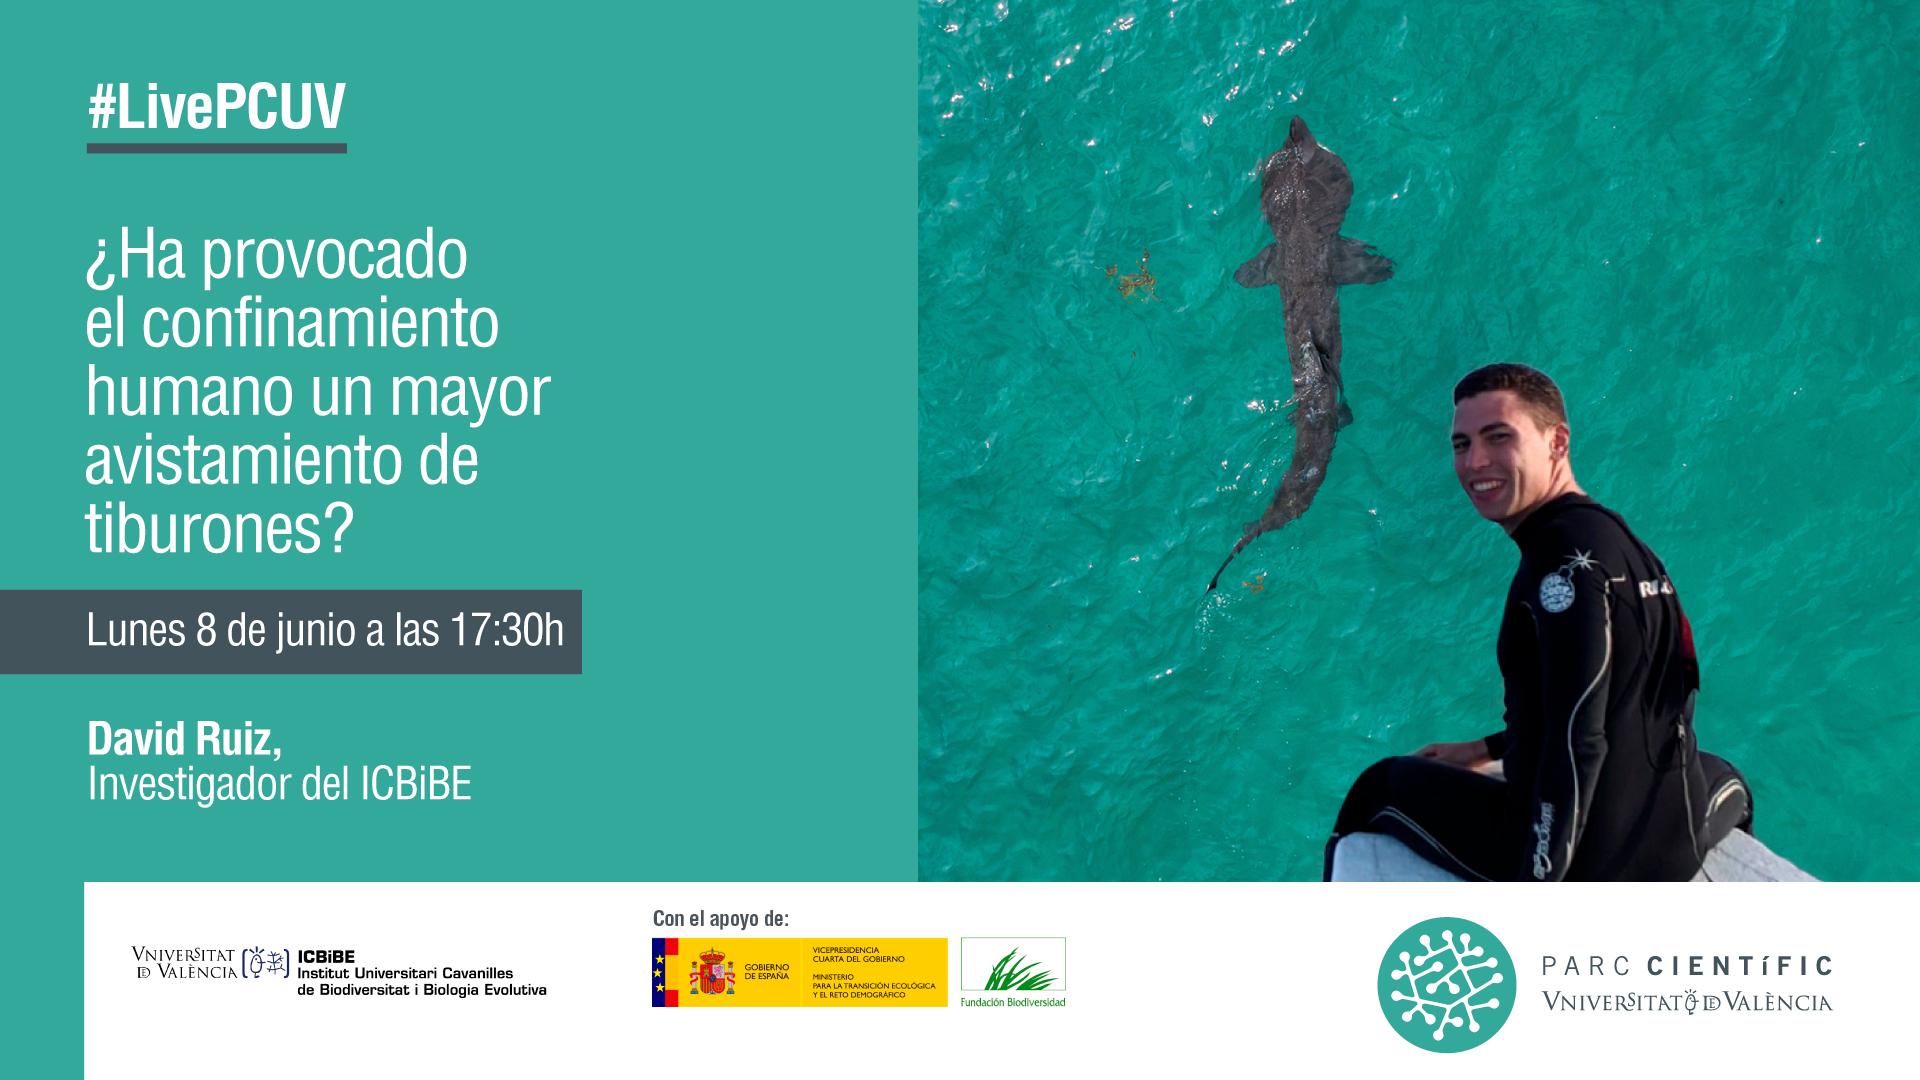 #LivePCUV con David Ruiz, investigador del ICBiBE especializado en tiburones